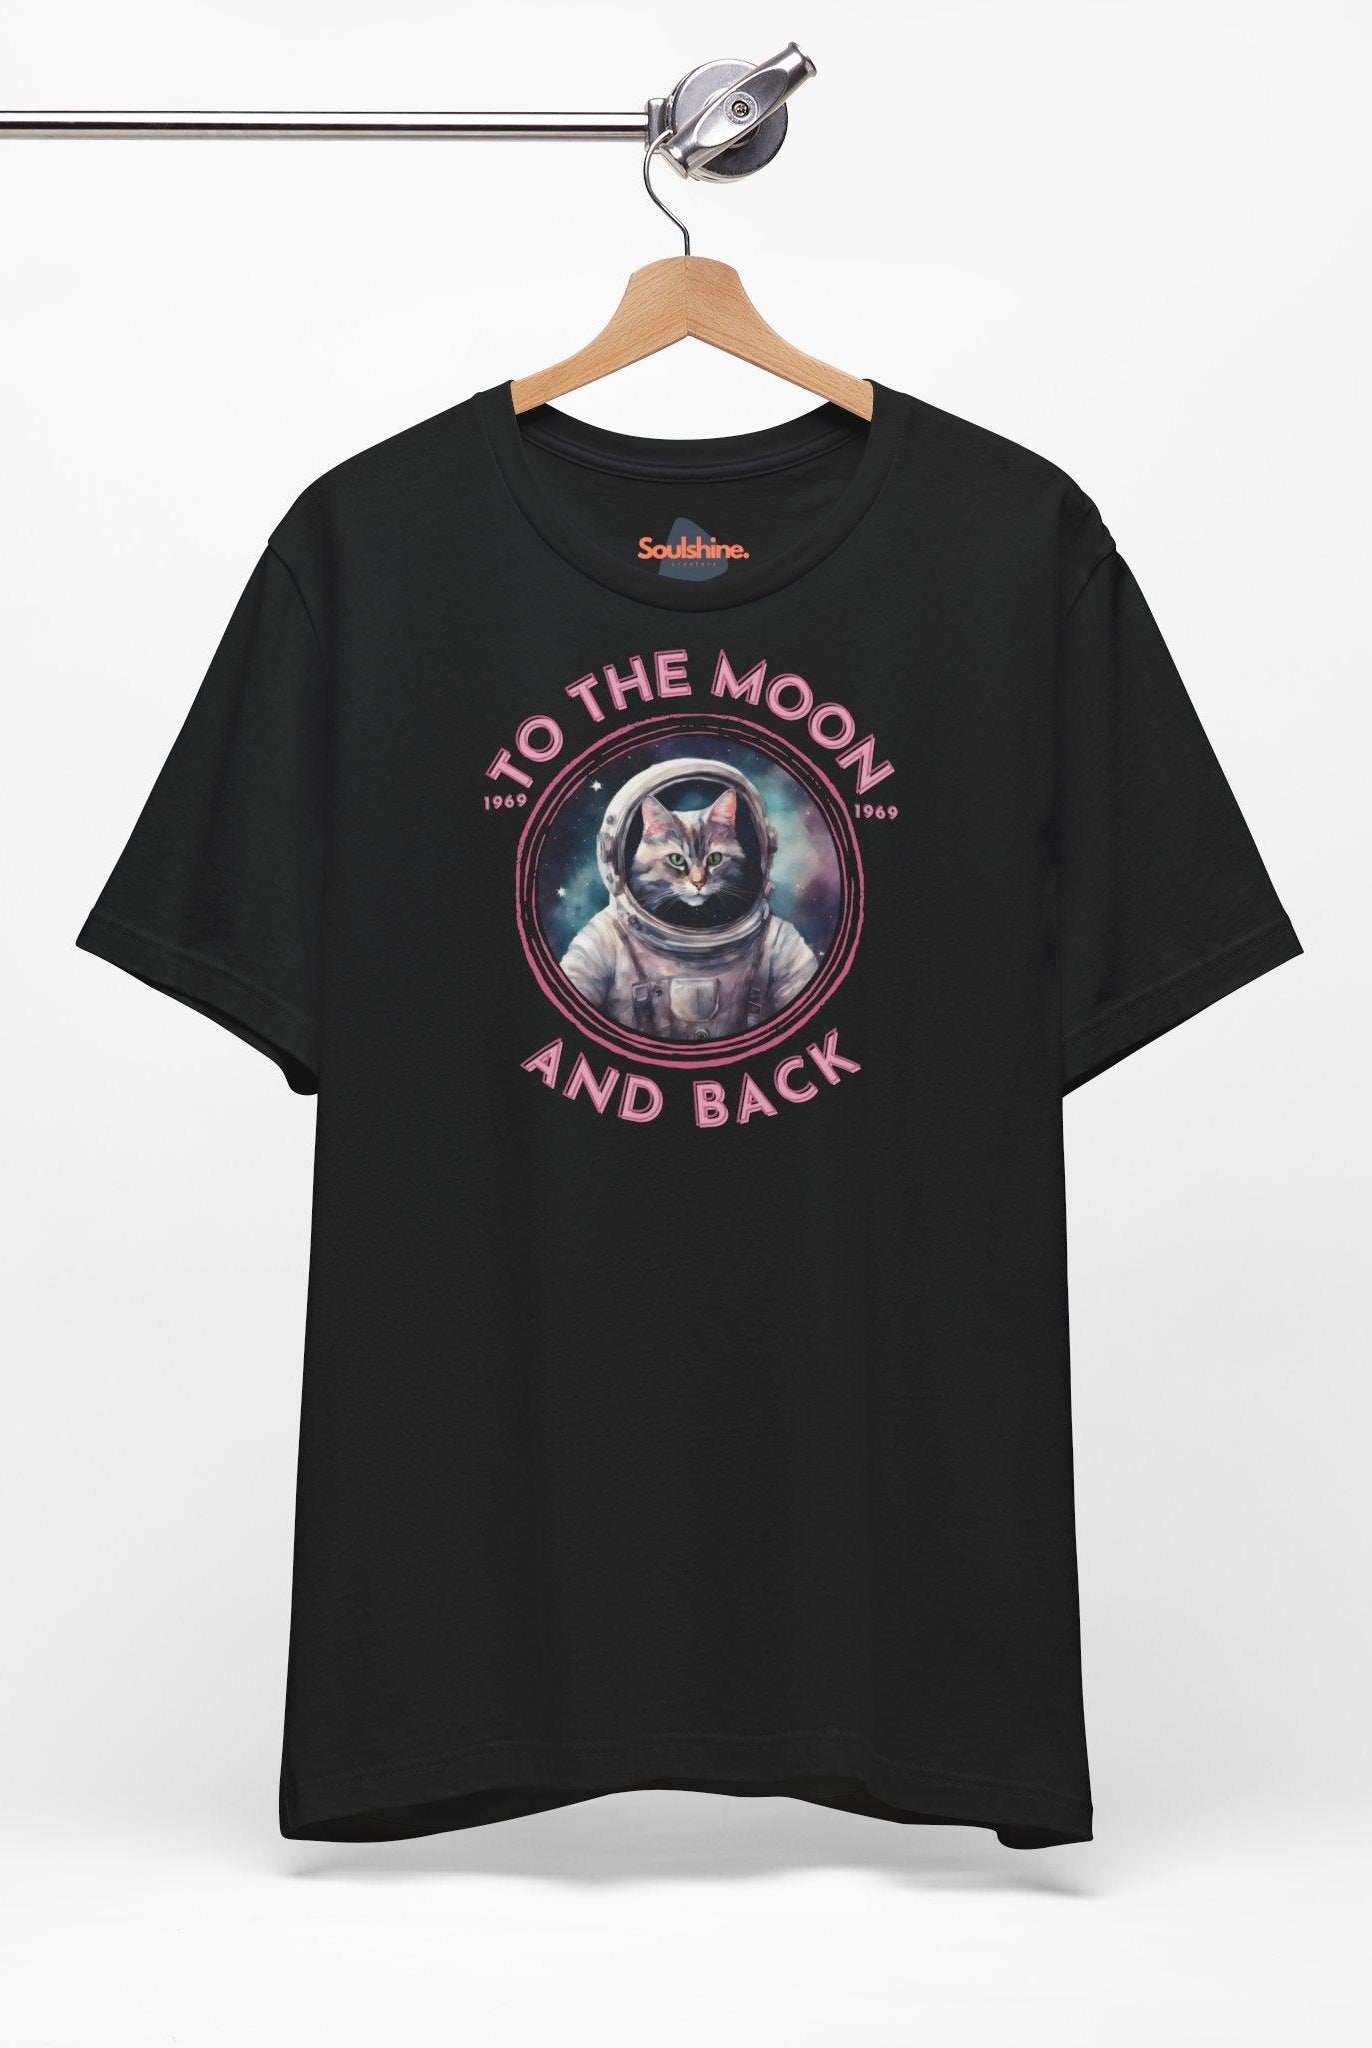 To the moon and back - Astrocat - Cat T-Shirt - Astronaut - Soulshinecreators - Bella & Canvas - EU - Soulshinecreators